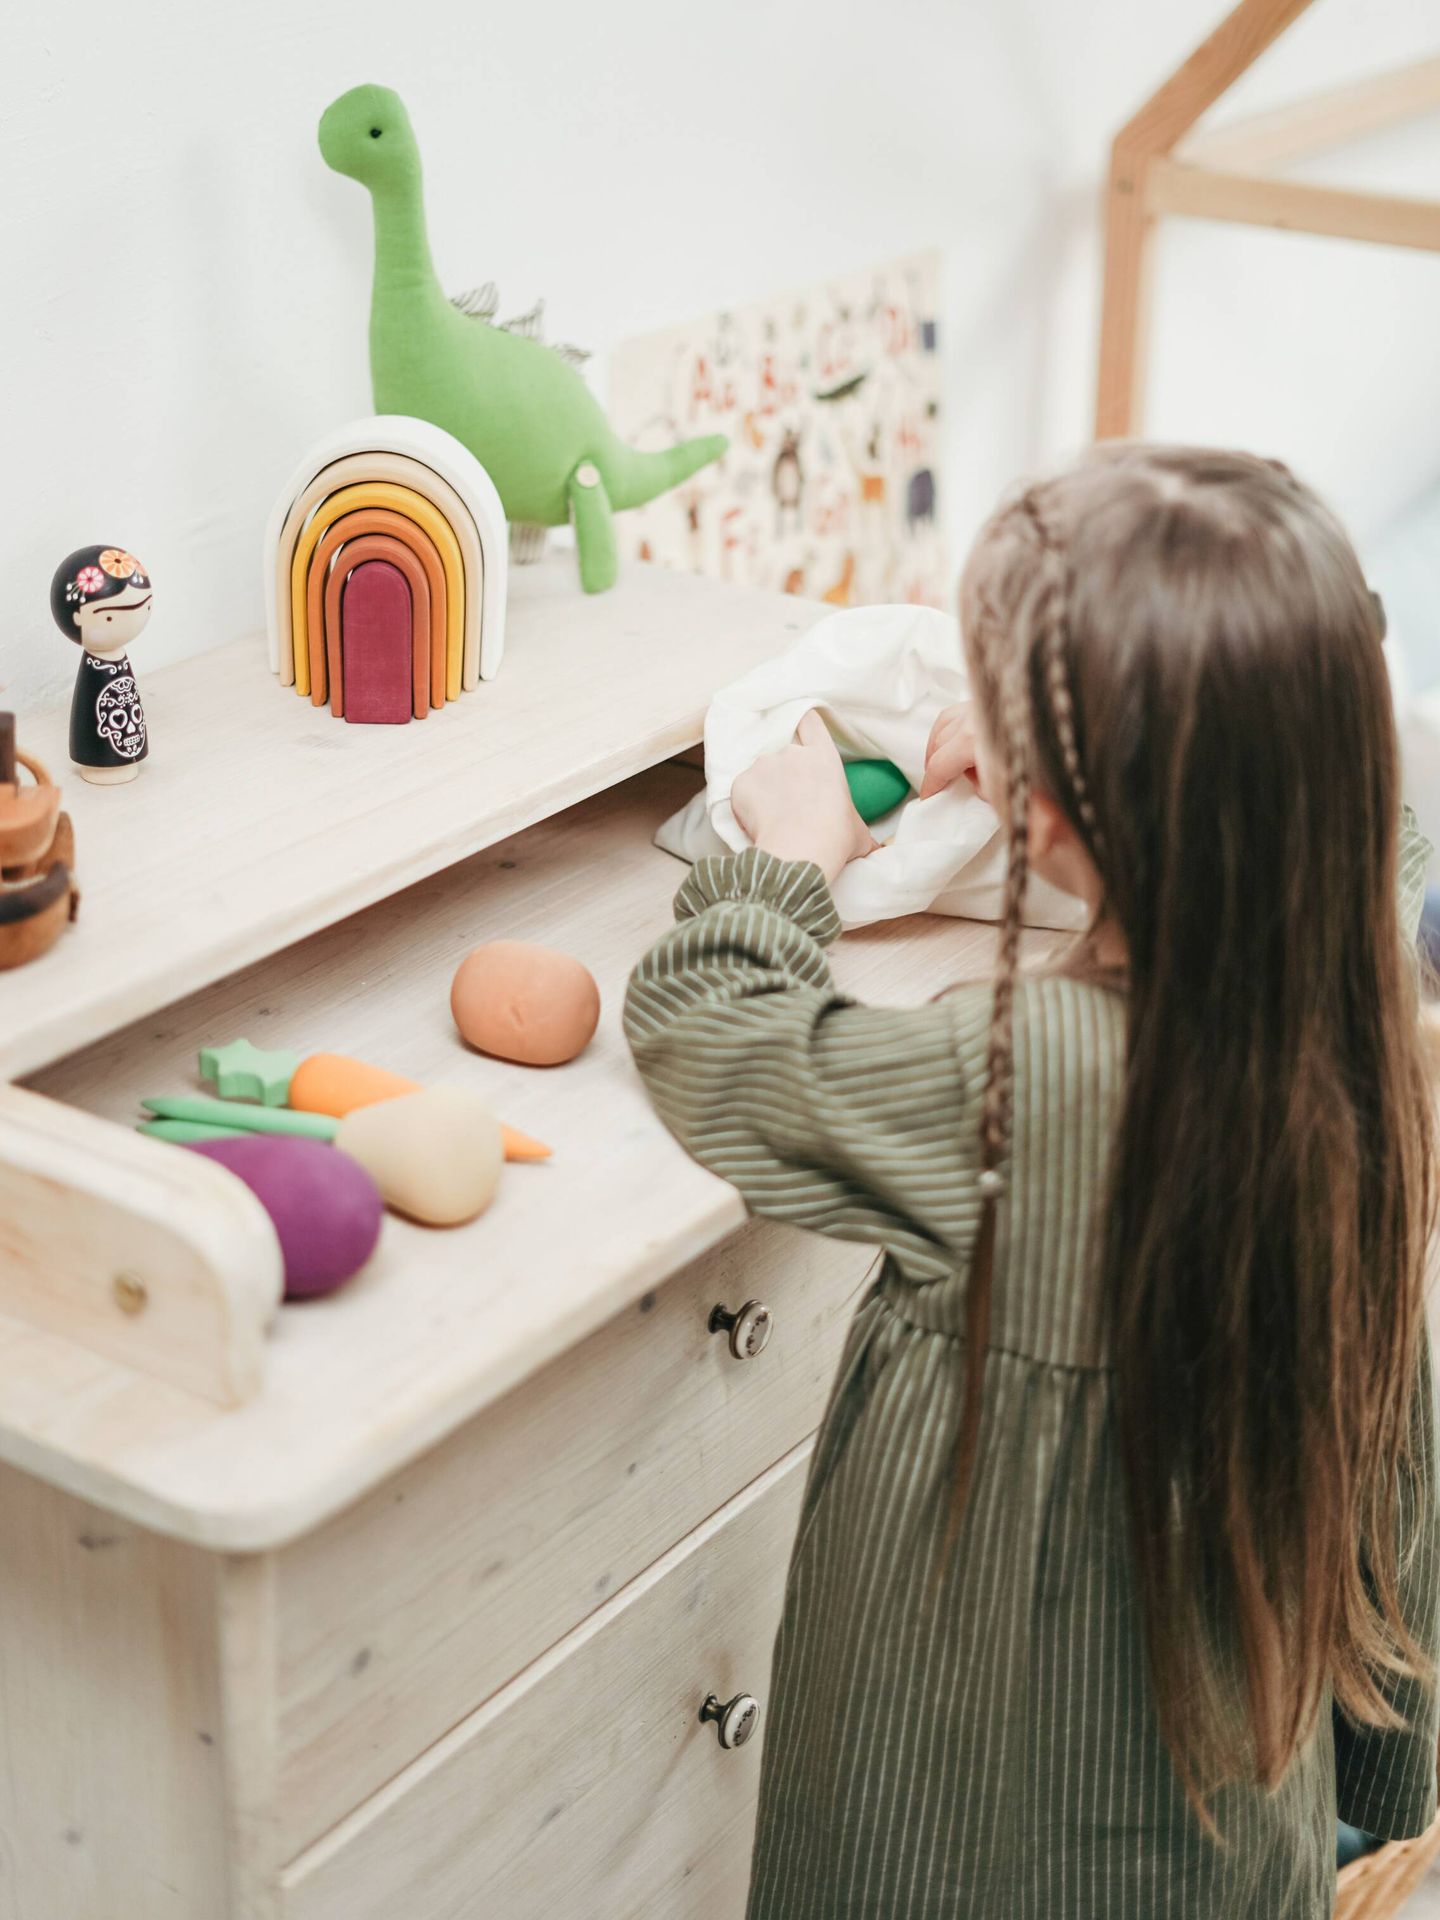 Los niños pueden aprender a guardar sus juguetes. (Pexels/ cottonbro studio)